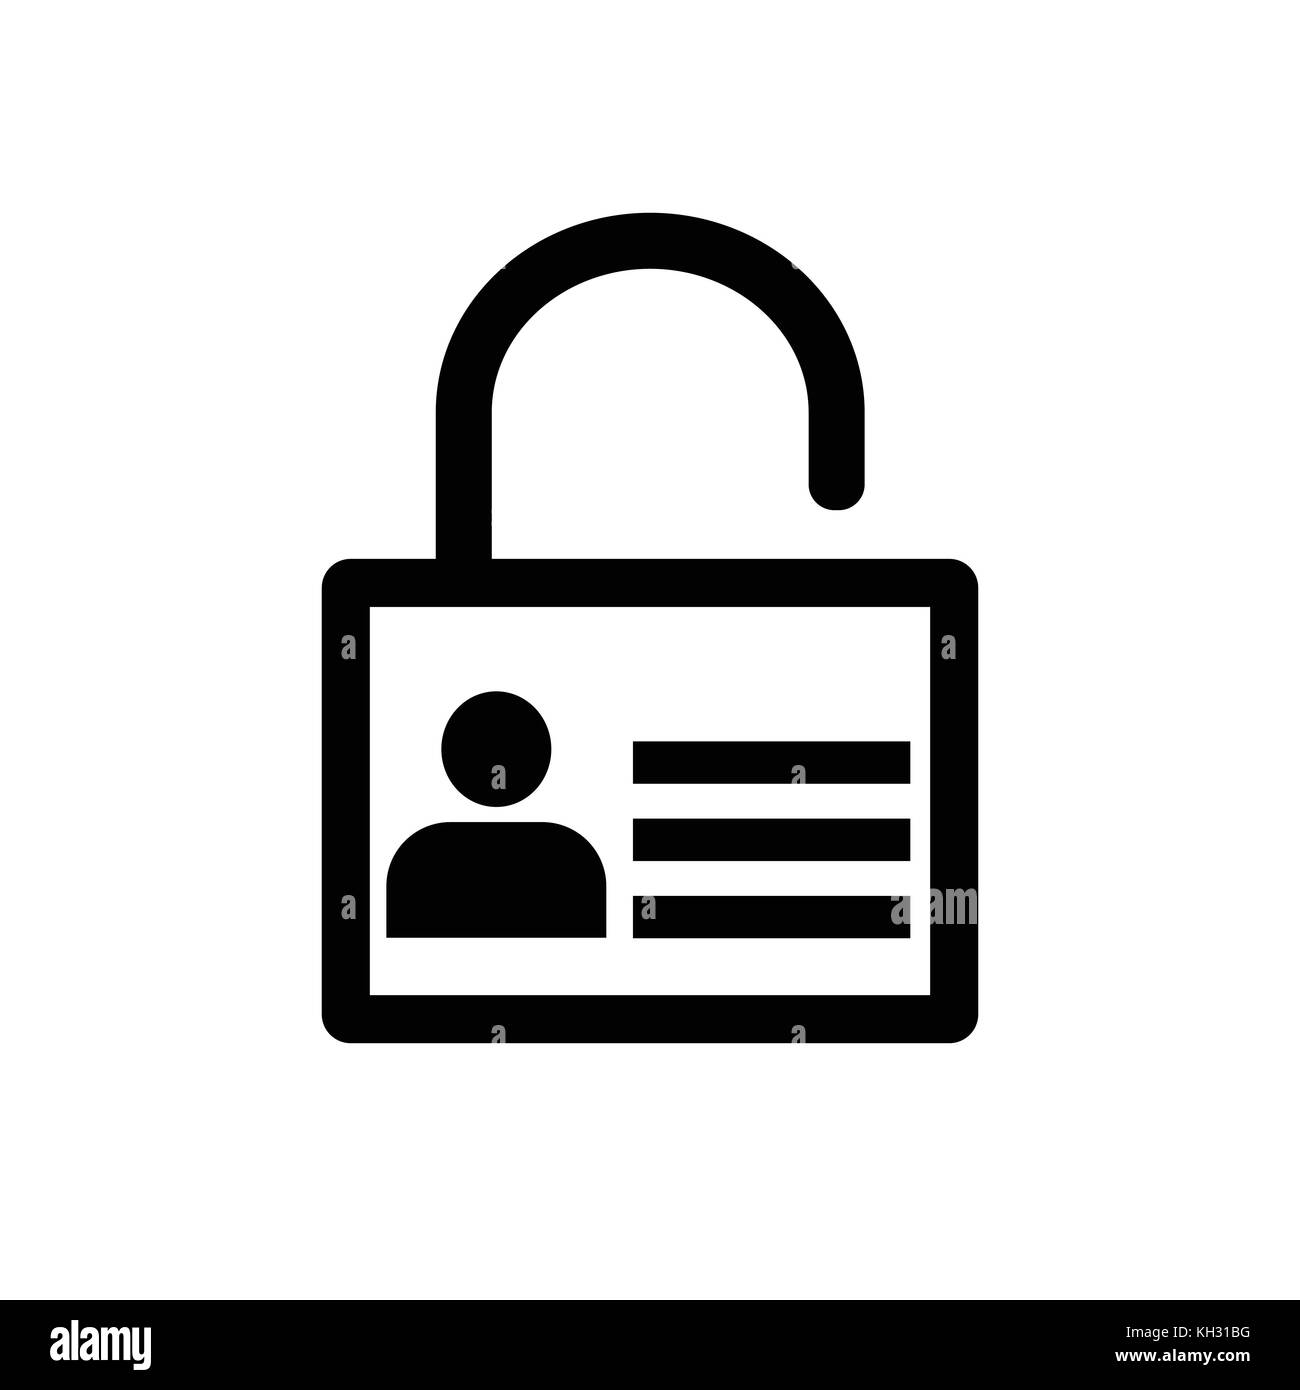 Icône de verrouillage, icône de l'utilisateur sur l'icône de clé, protection personnelle protection de la vie privée sur internet.. l'icône de sécurité protégé par mot de passe. touches. vector design iconique. Illustration de Vecteur